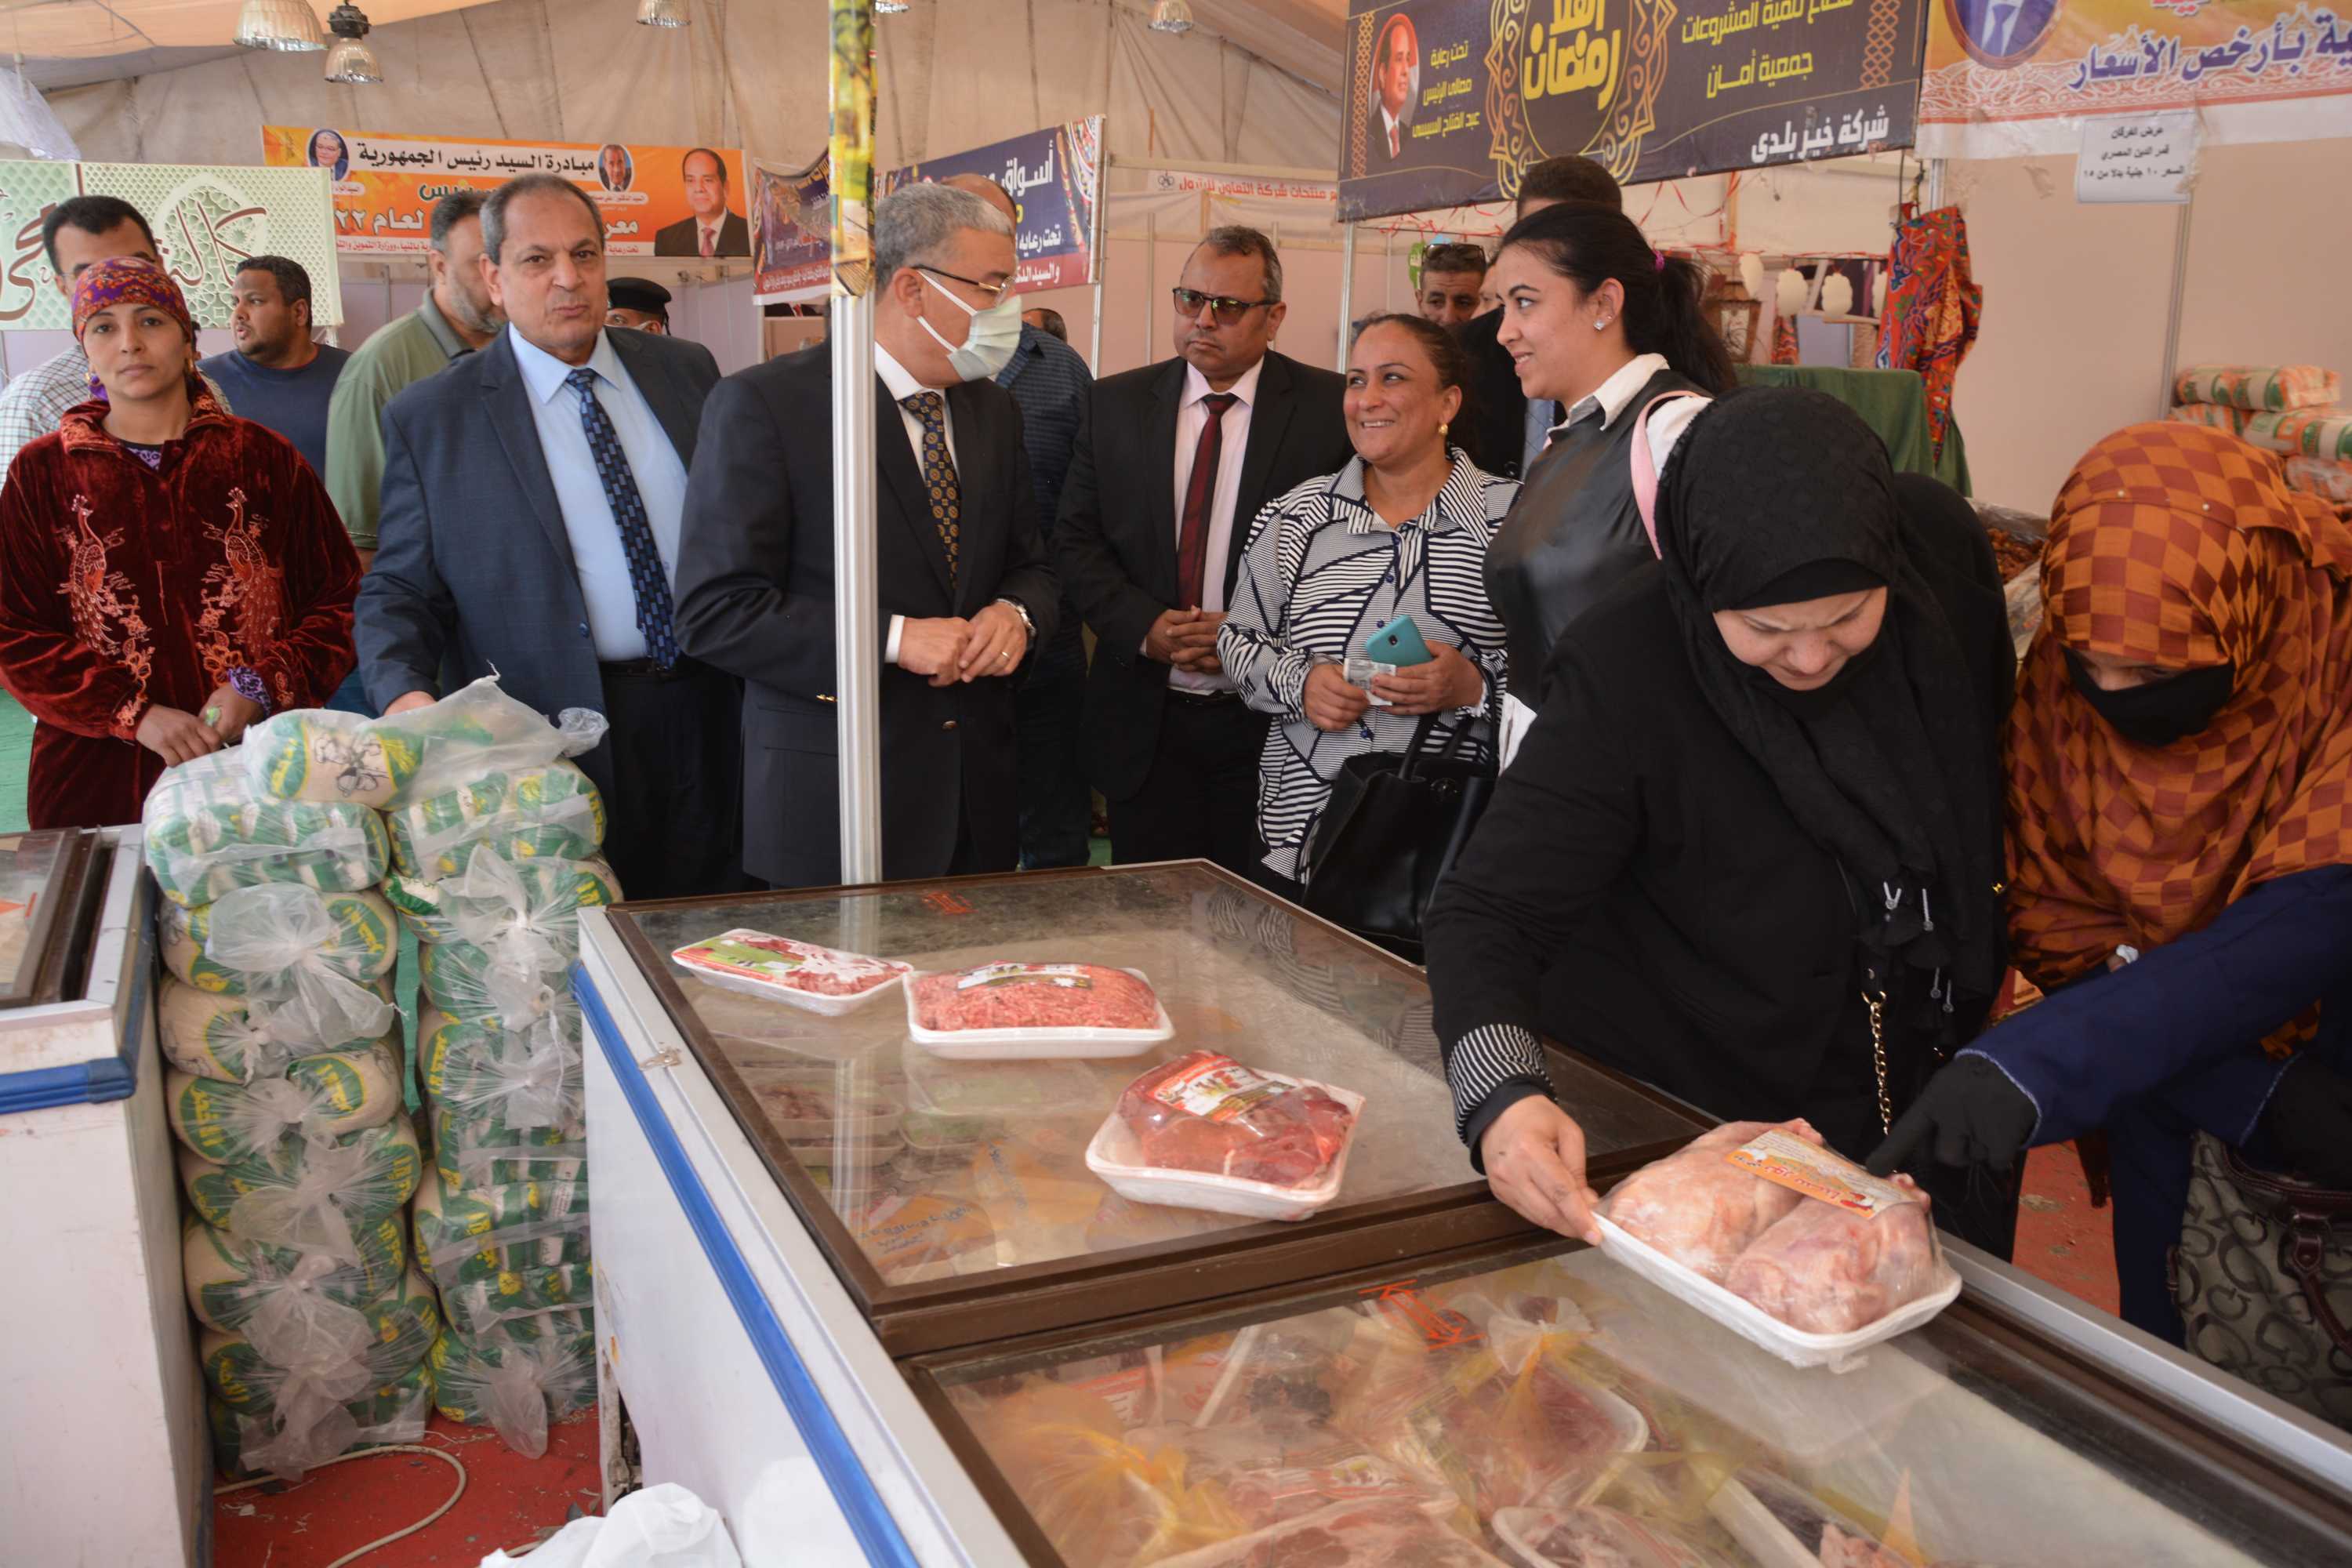 محافظ المنيا يتفقد معرض أهلا رمضان وموقع سوق الحبشي لتجهيز شوادر لبيع الخضر والفواكه بأسعار مخفضة  (4)